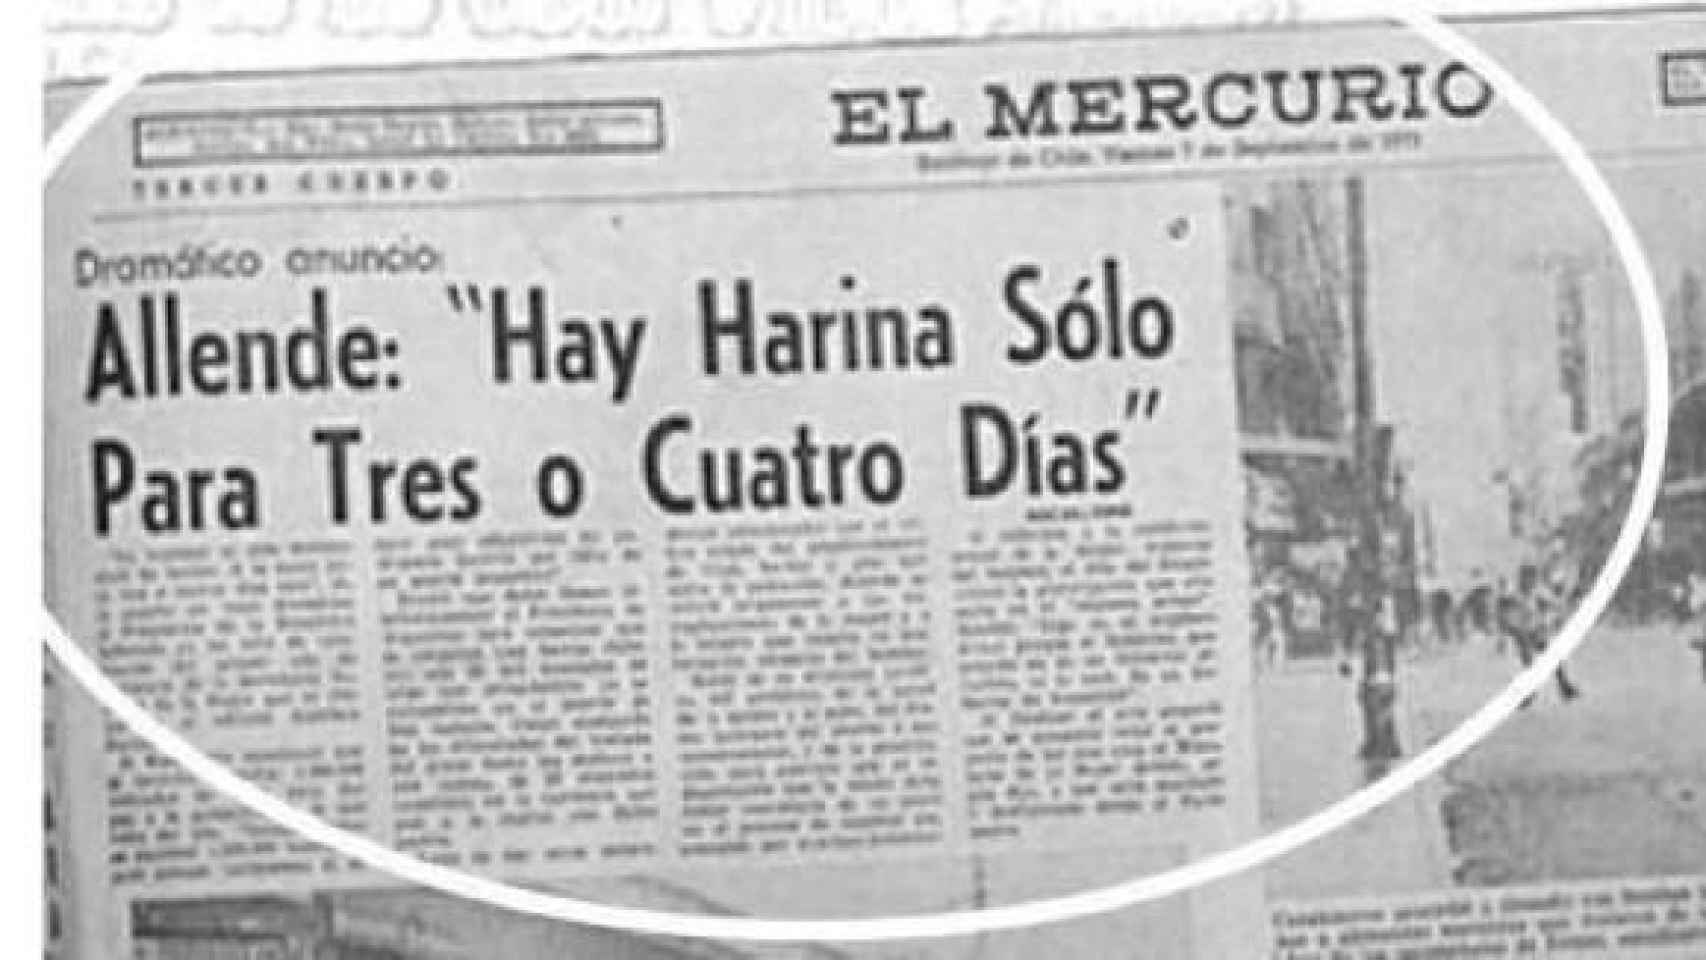 Recorte del diario El Mercurio del 7 de septiembre con las palabras de Allende.